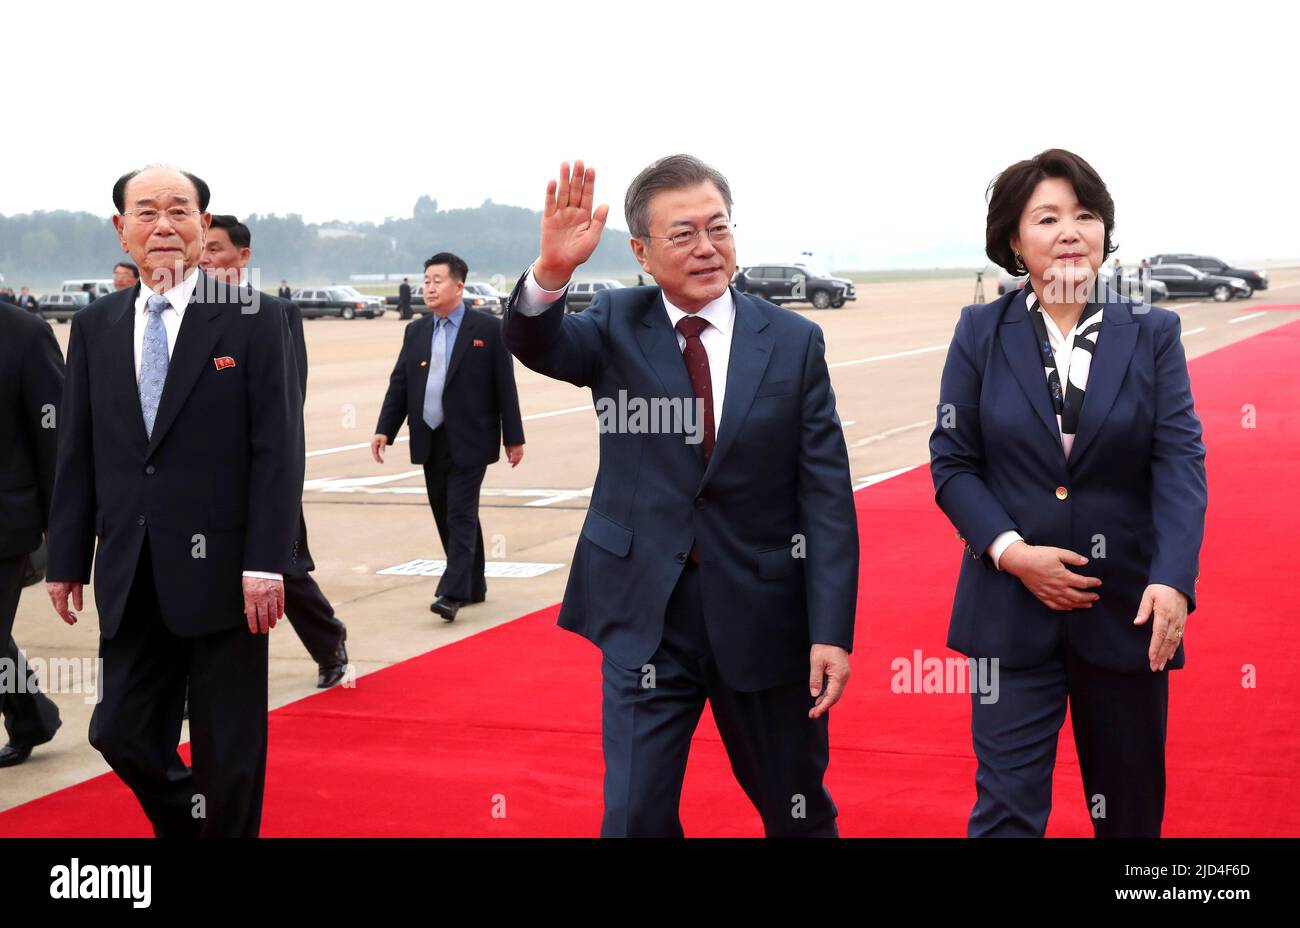 20 sept 2018-Pyeongyang, Président Corée du Nord-Corée du Sud Moon Jae-in et la première dame Kim Jung Sook se dirigent vers la montagne de baekdu pour quitter Pyeongyang à l'aéroport de Sunan à Pyeongyang, en Corée du Nord. Le président sud-coréen Moon Jae-in et le dirigeant nord-coréen Kim Jong-un se sont lancés jeudi dans un rare voyage au sommet du mont Paekdu, dans le cadre d'un événement destiné à renforcer leurs liens personnels et à souligner le succès de leur sommet bilatéral à Pyongyang. / PRESSE COMMUNE PHOTO CORP Banque D'Images